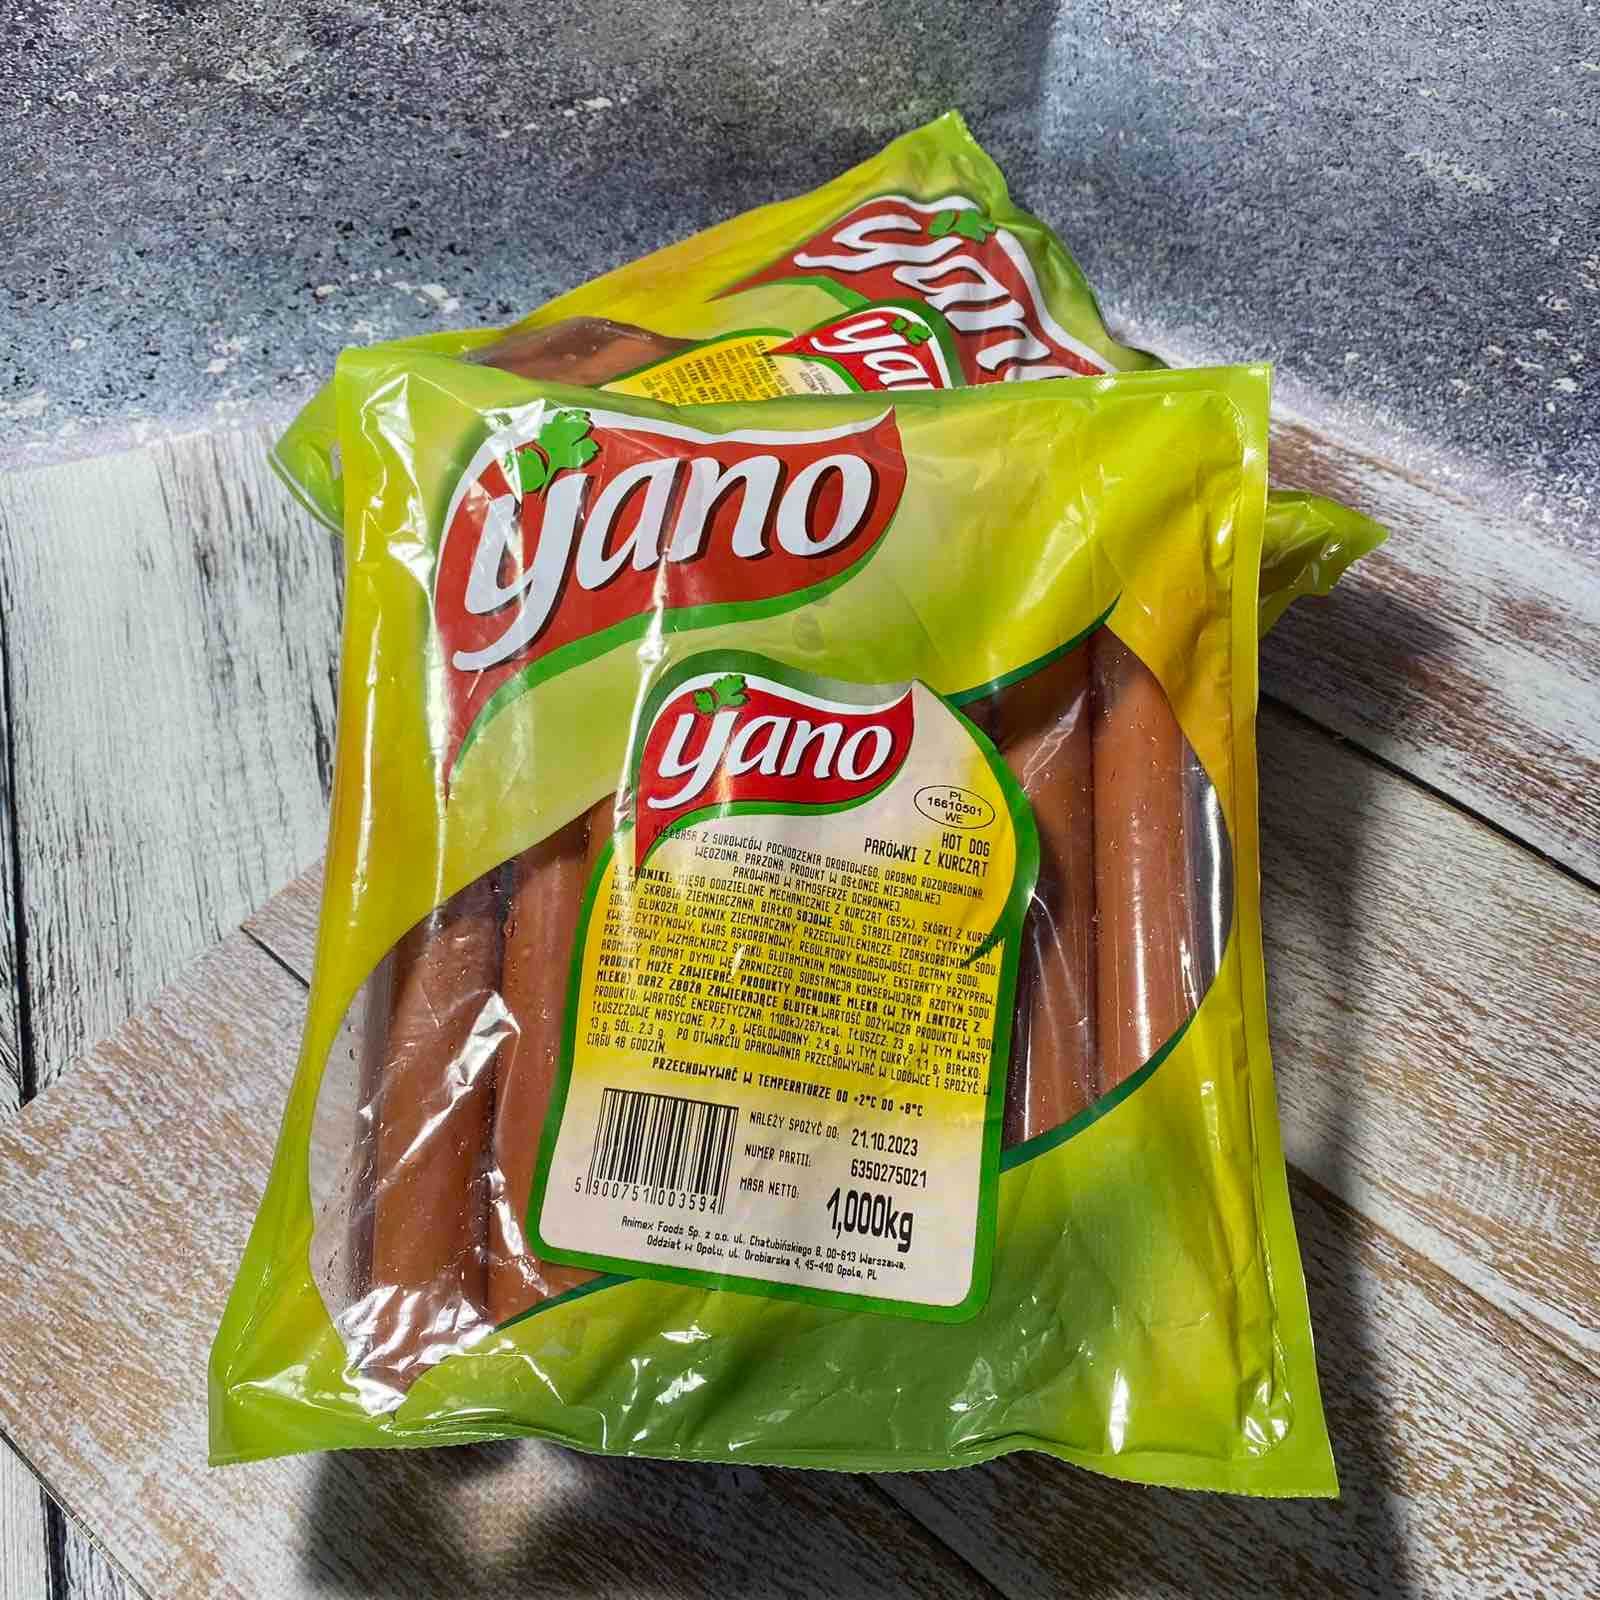 Курячі сосиски Yano
Вага 1 кг